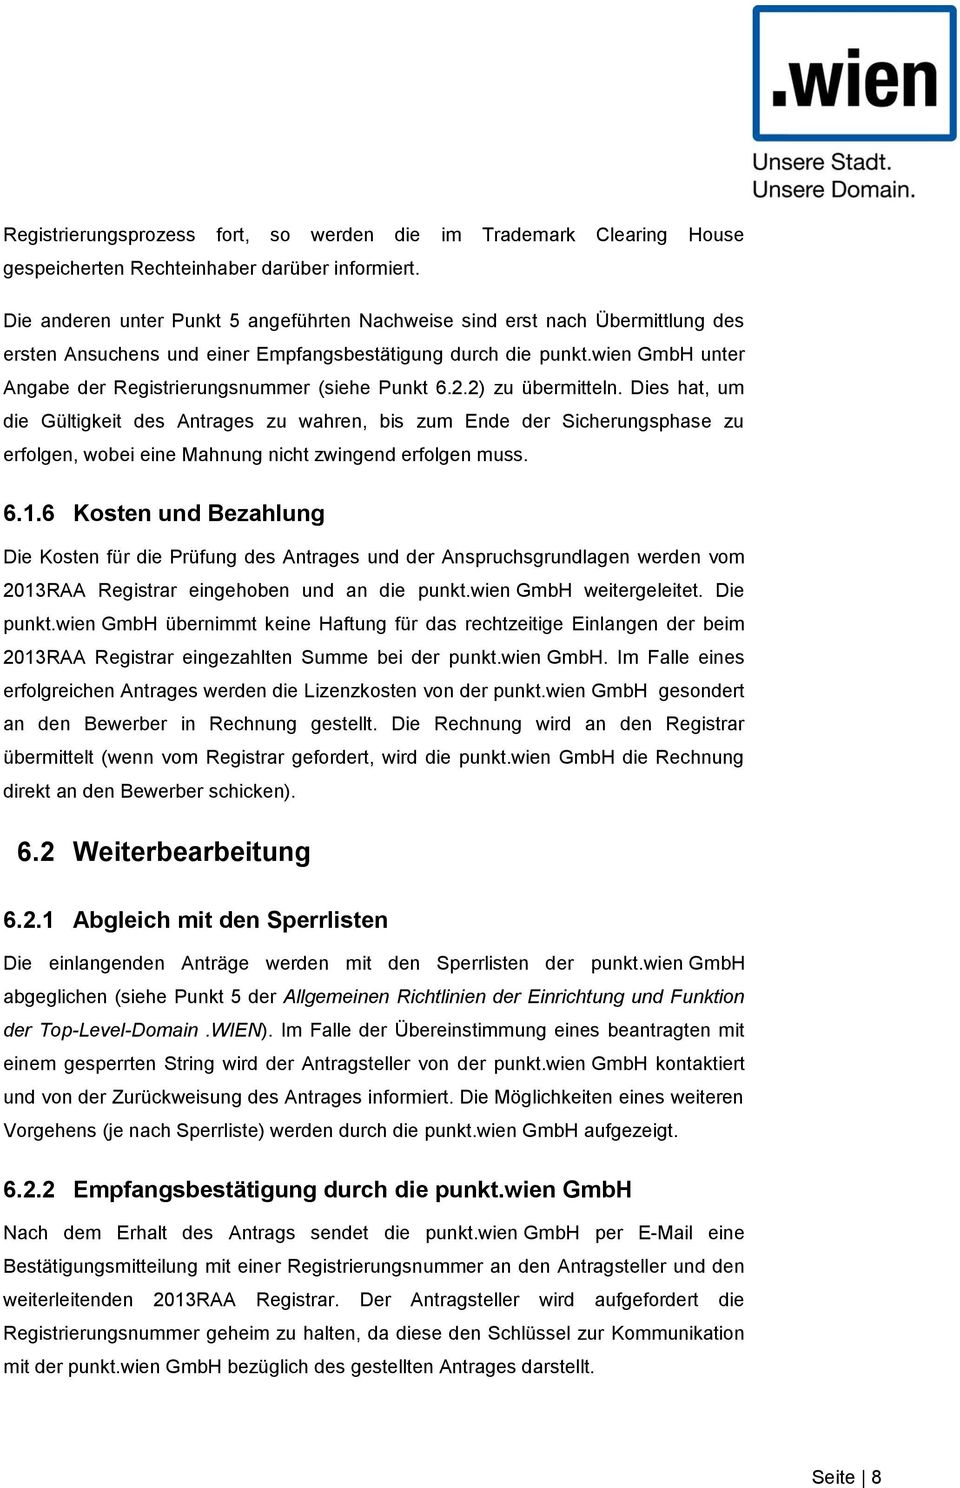 wien GmbH unter Angabe der Registrierungsnummer (siehe Punkt 6.2.2) zu übermitteln.